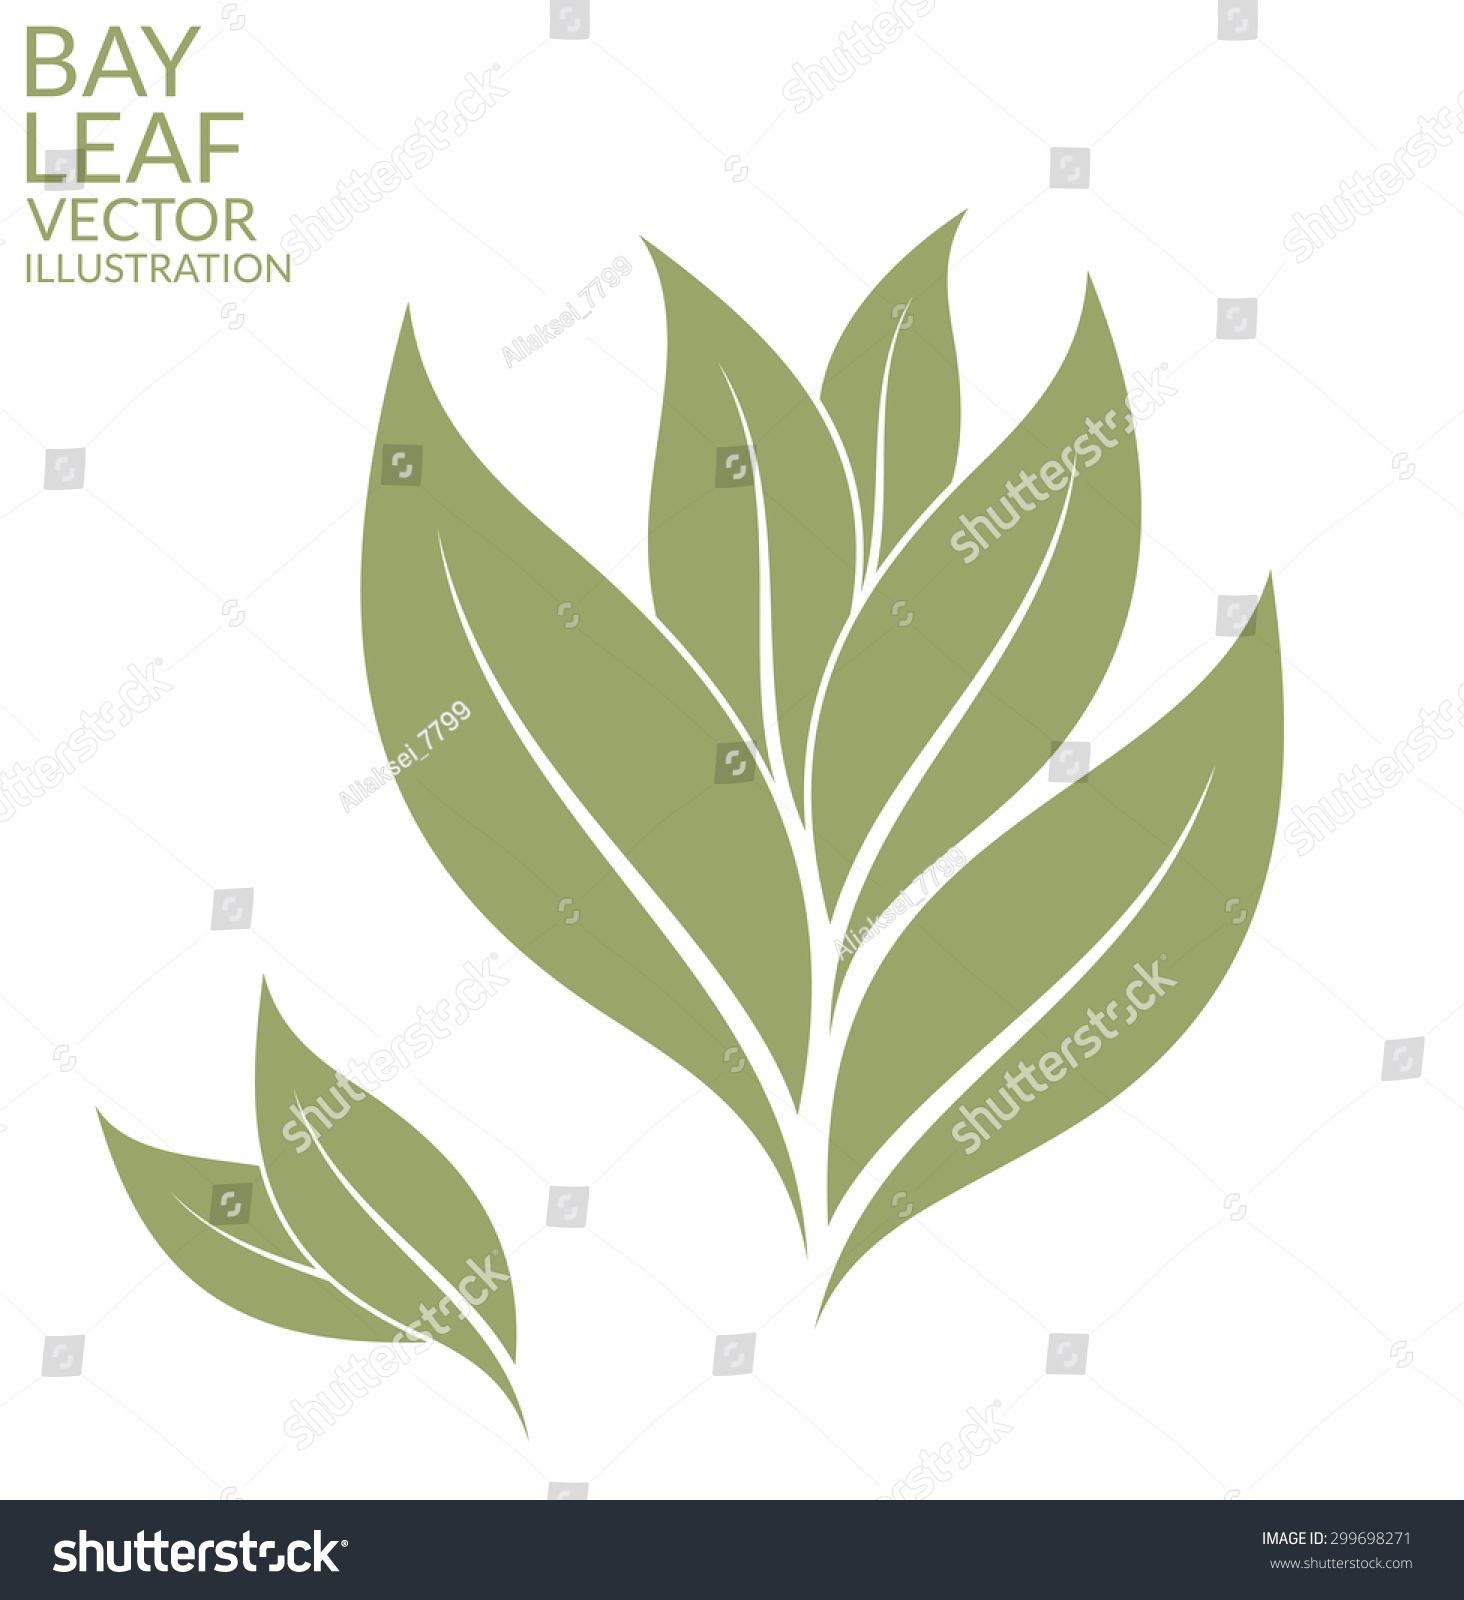 SVG of Bay leaf. Vector illustration EPS10 svg